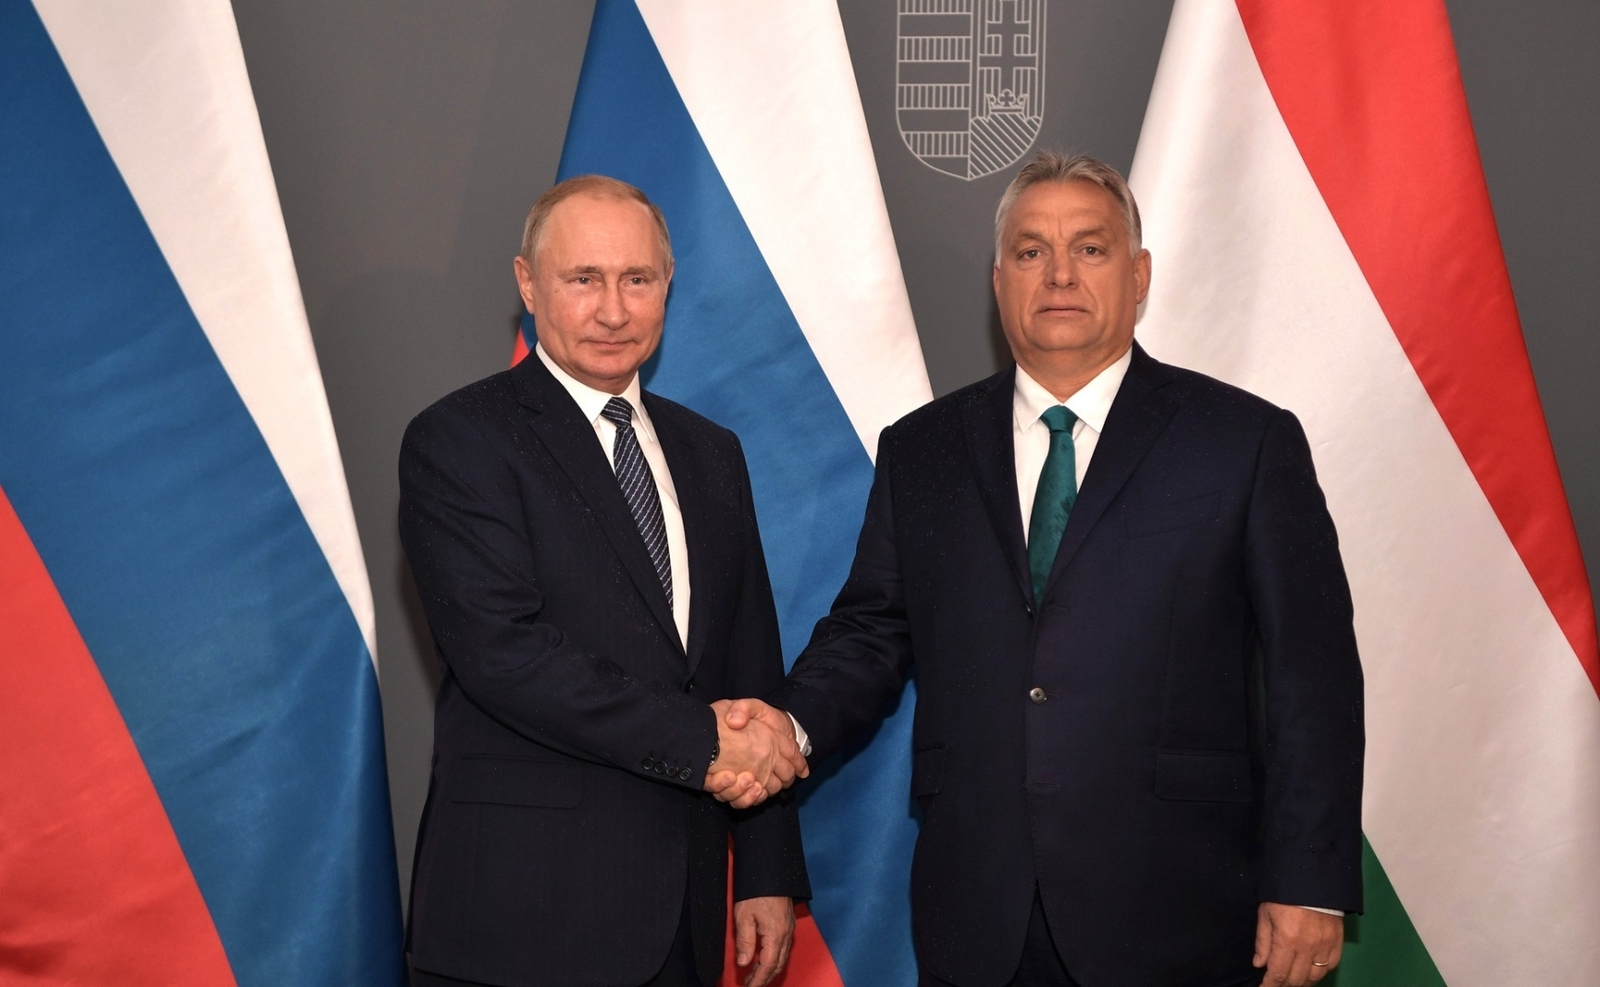 Польща готова припинити співпрацю із Угорщиною через позицію Орбана щодо України